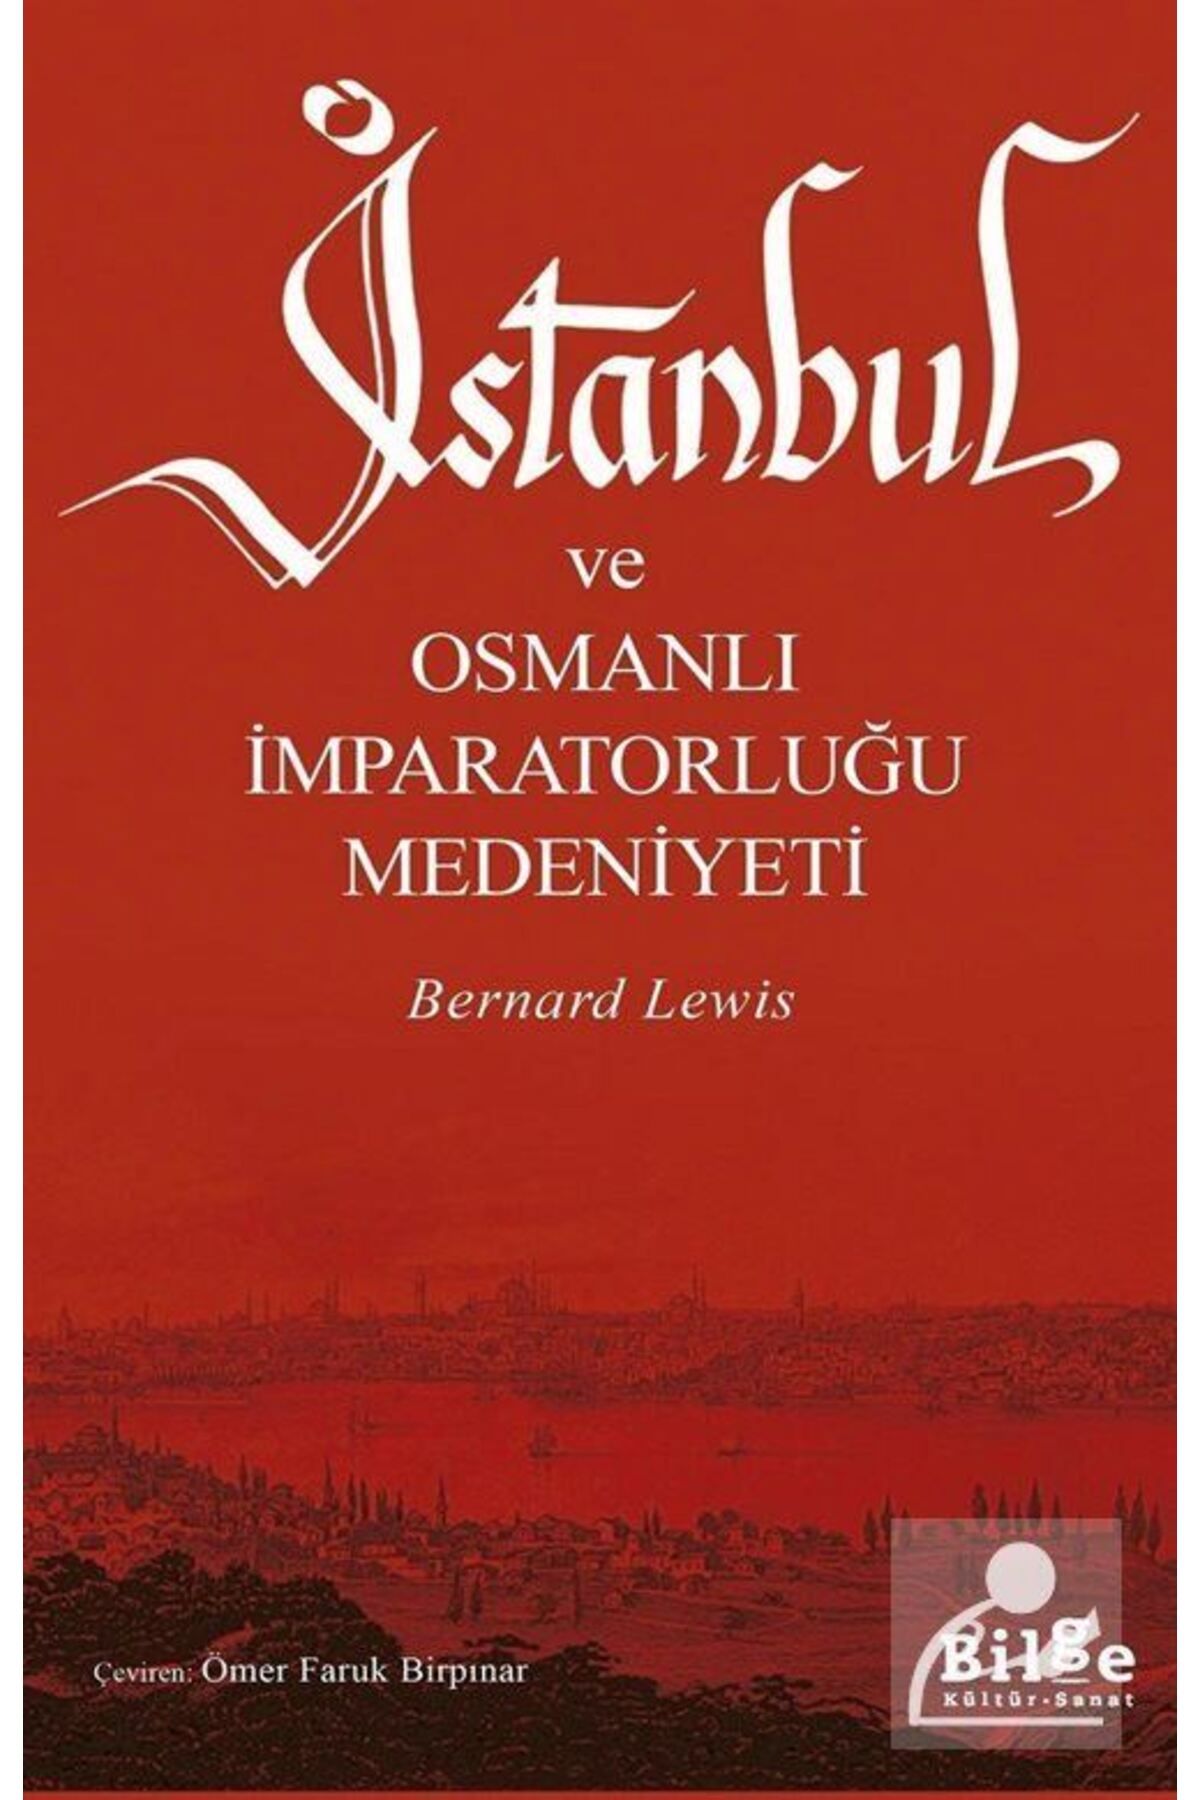 Bilge Kültür Sanat İstanbul ve Osmanlı İmparatorluğu Medeniyeti